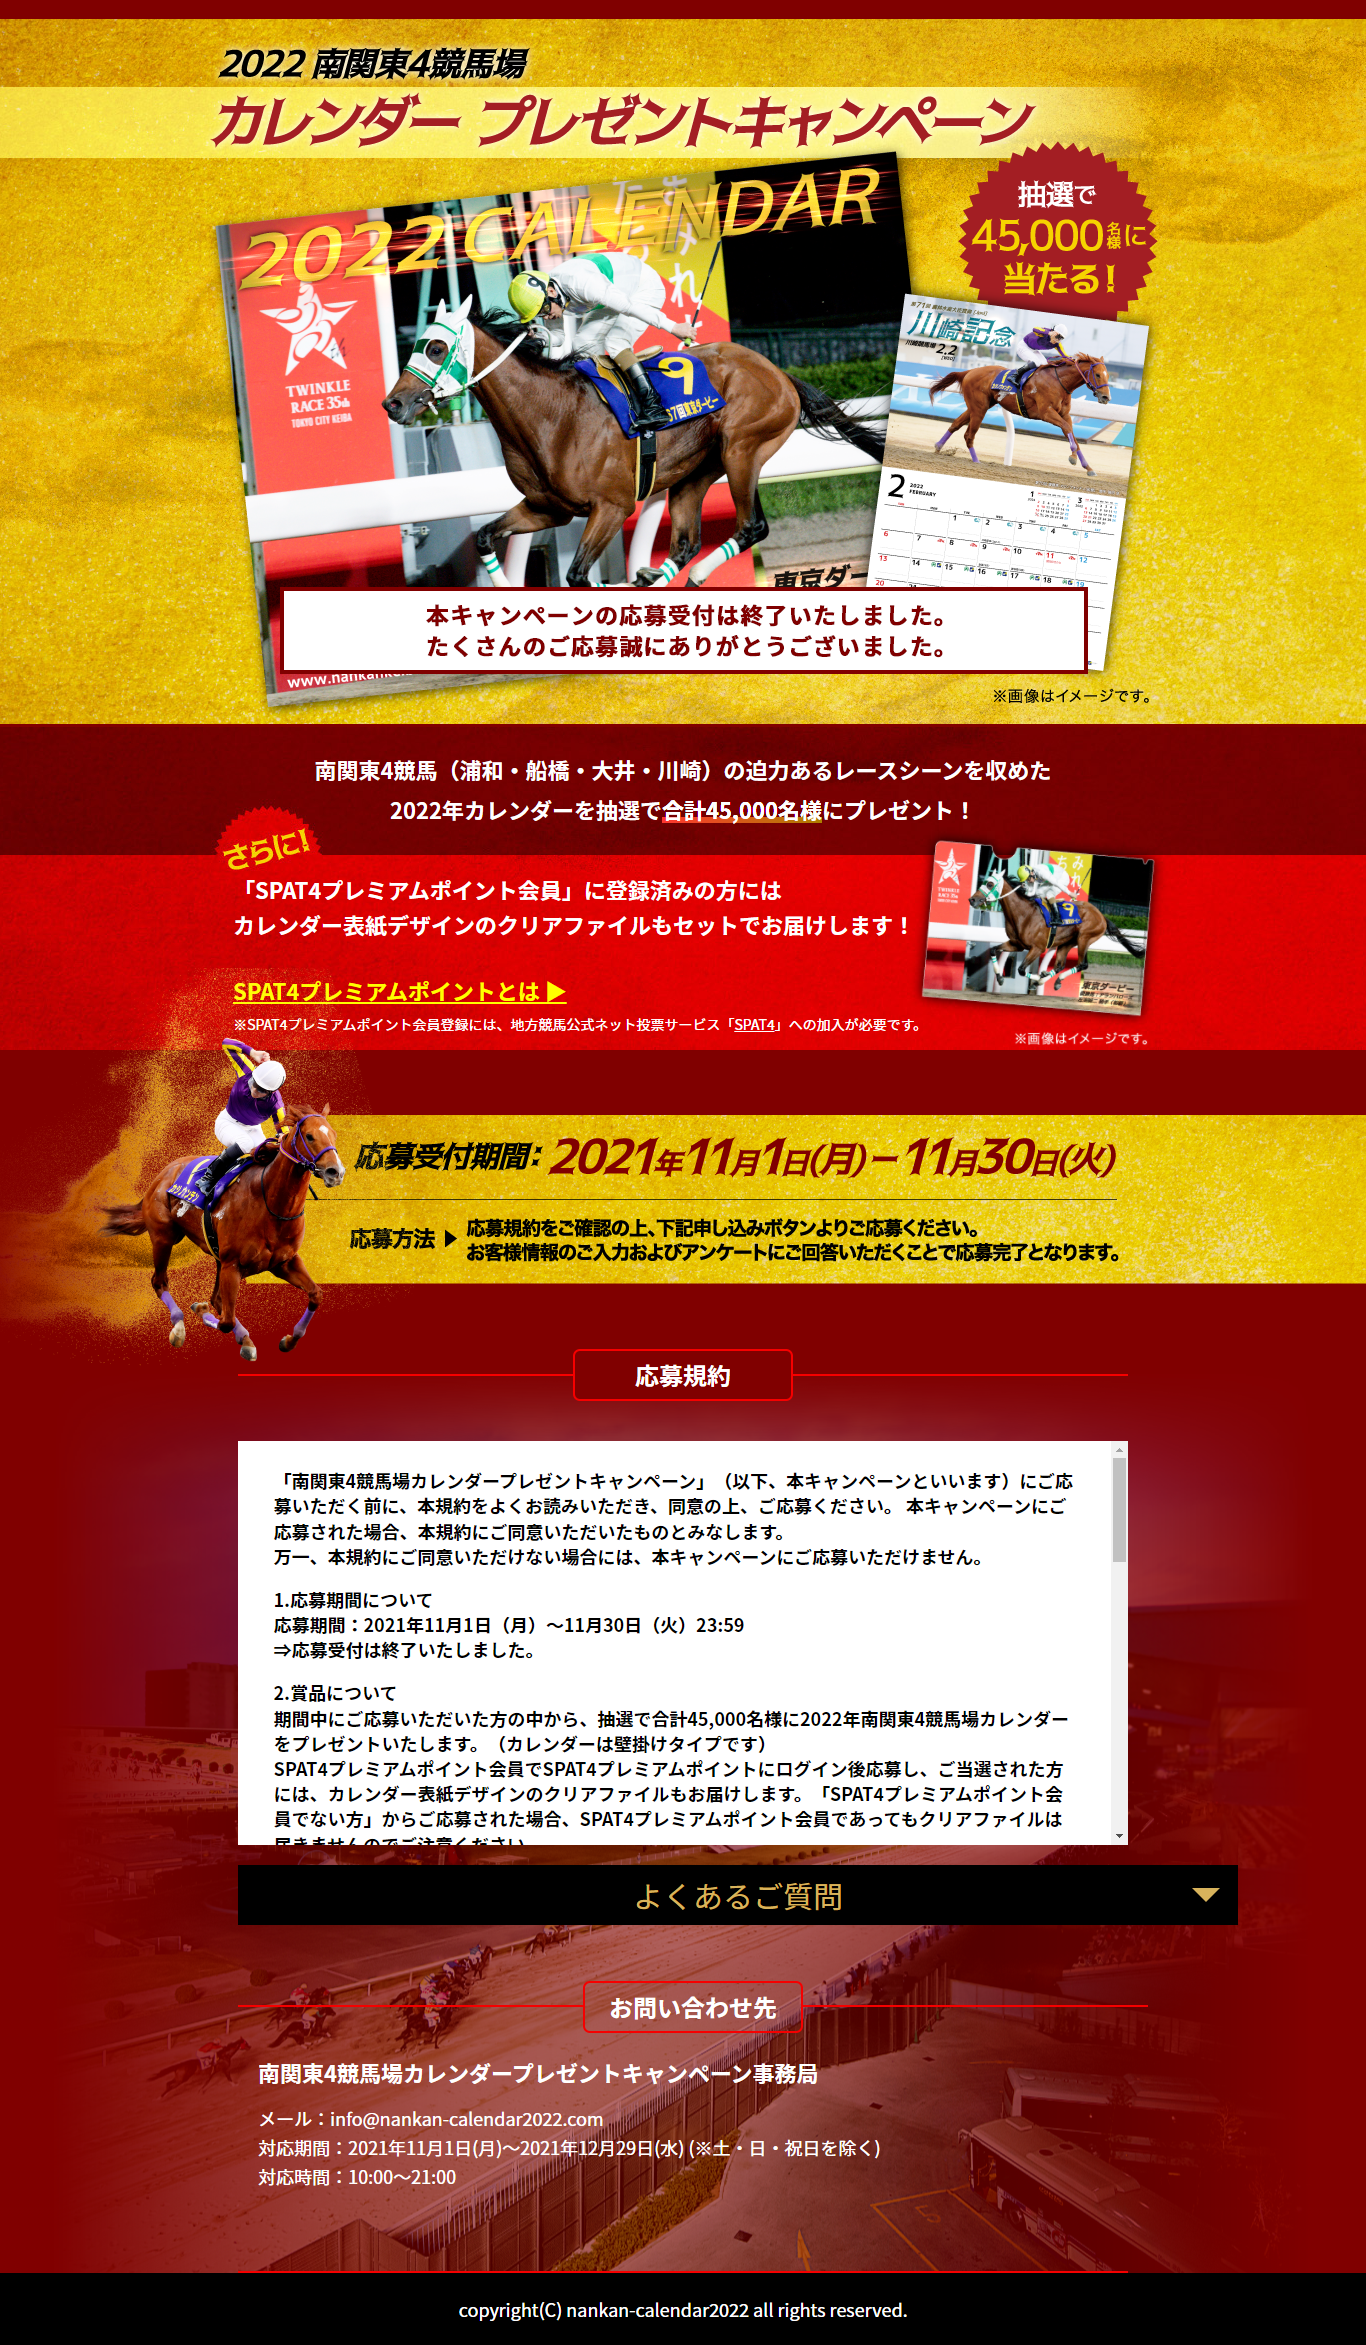 22南関東4競馬場カレンダー プレゼントキャンペーン キャンなび Webキャンペーンまとめサイト